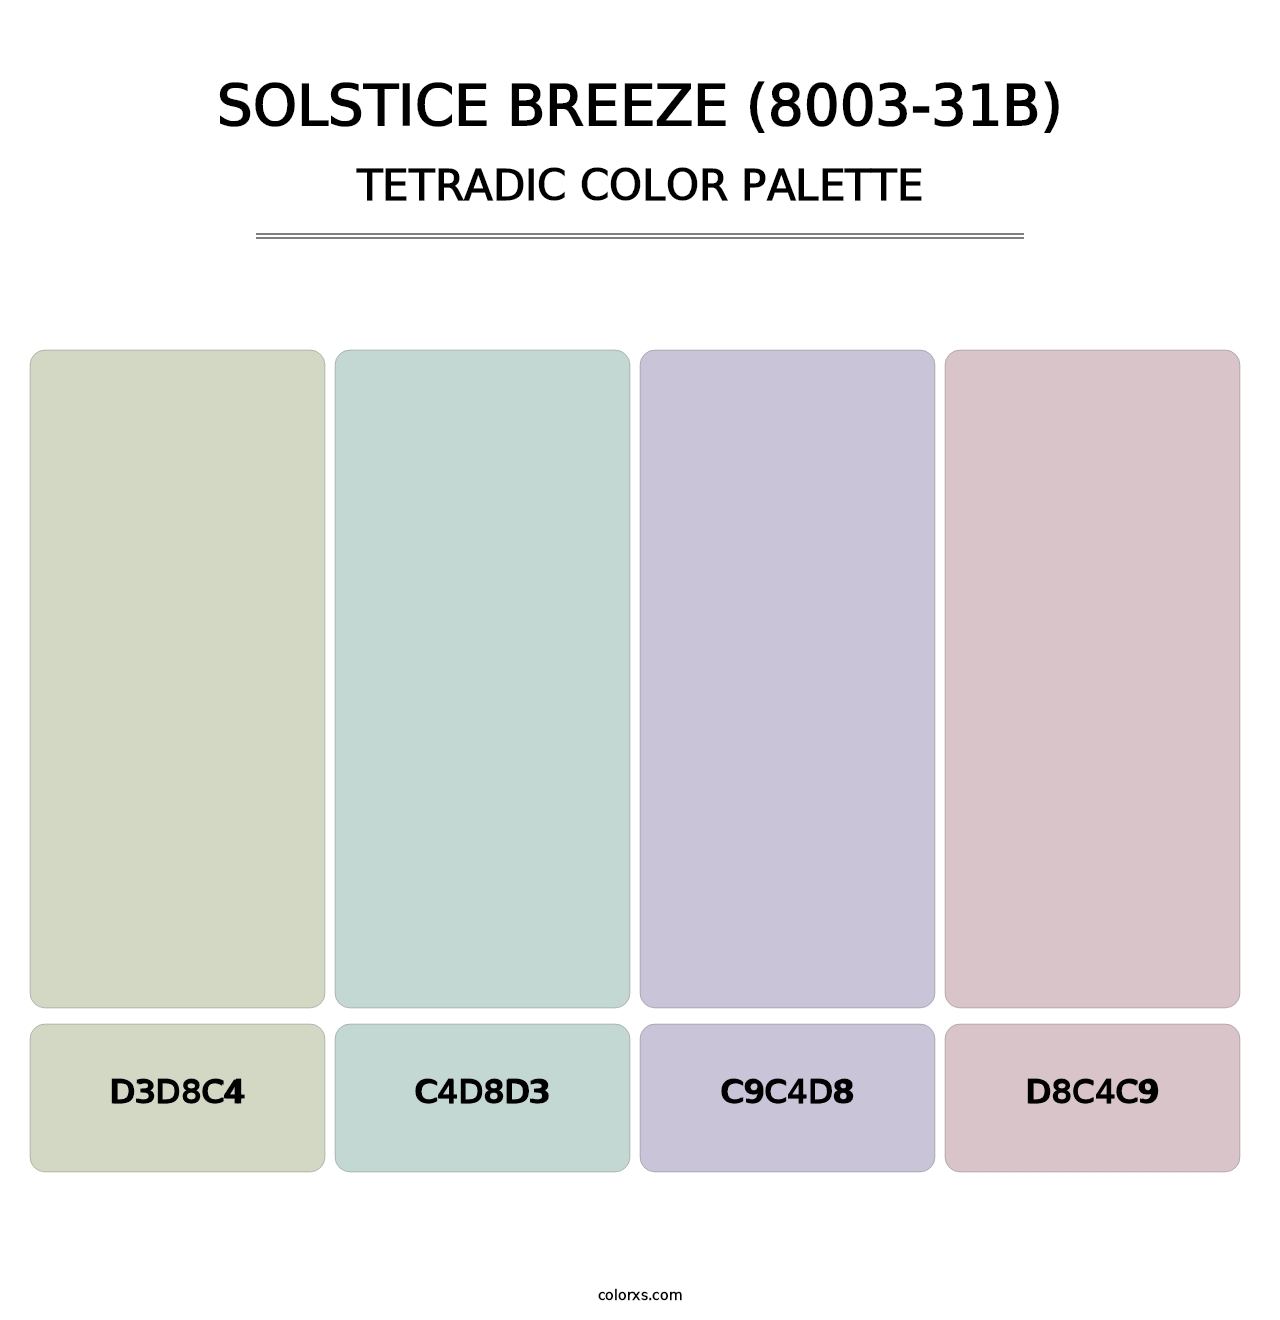 Solstice Breeze (8003-31B) - Tetradic Color Palette